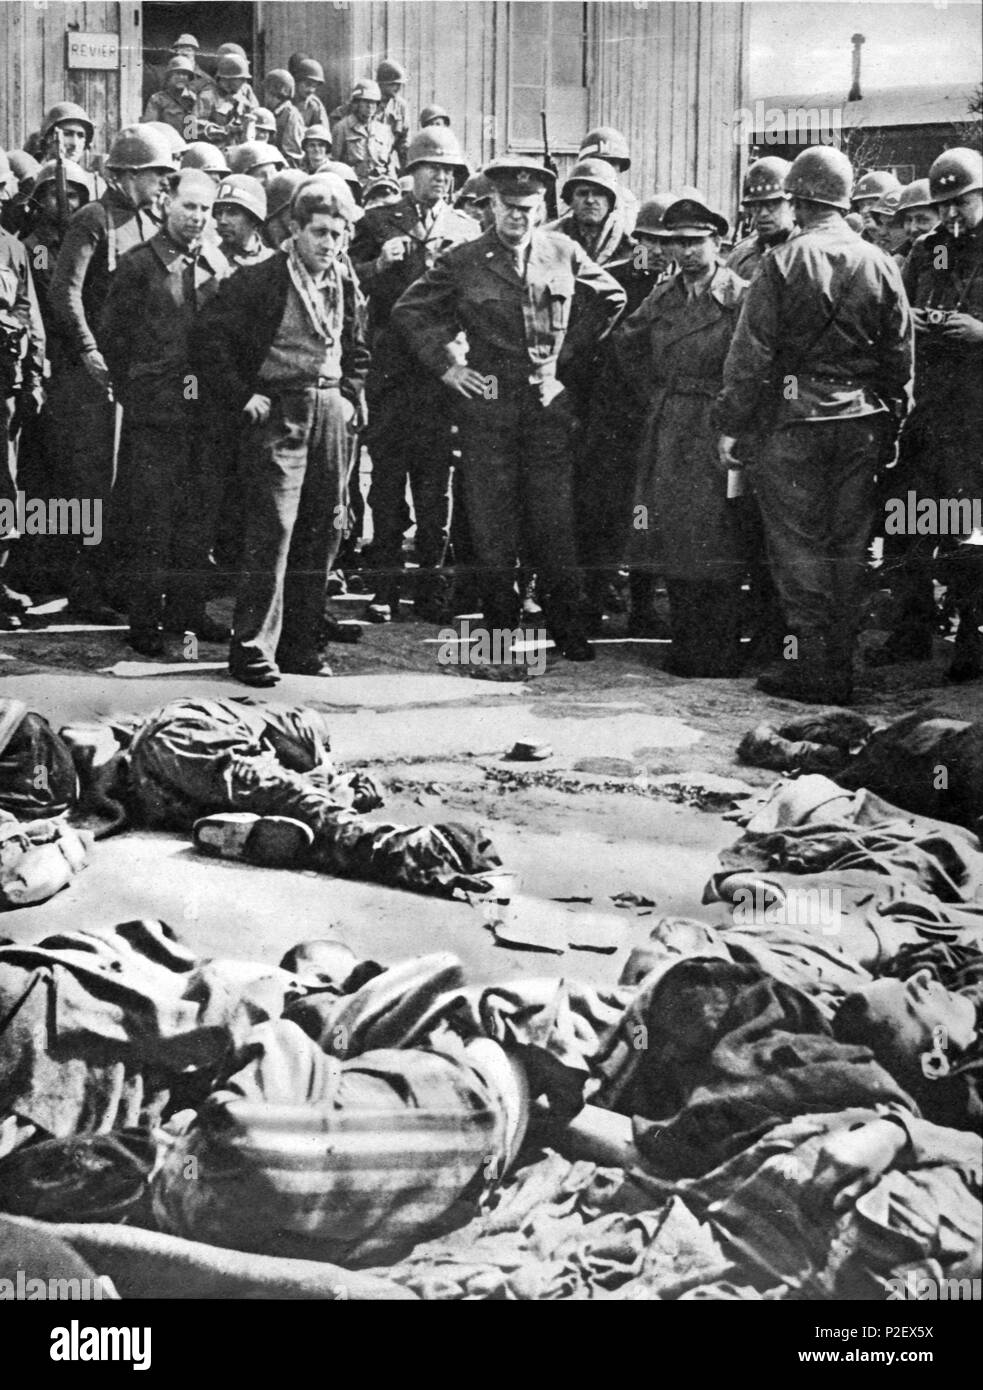 El general Dwight D. Eisenhower contemplando los cadáveres del campo de concentración Ohrdruf, el primero en ser liberado por los aliados. Stock Photo